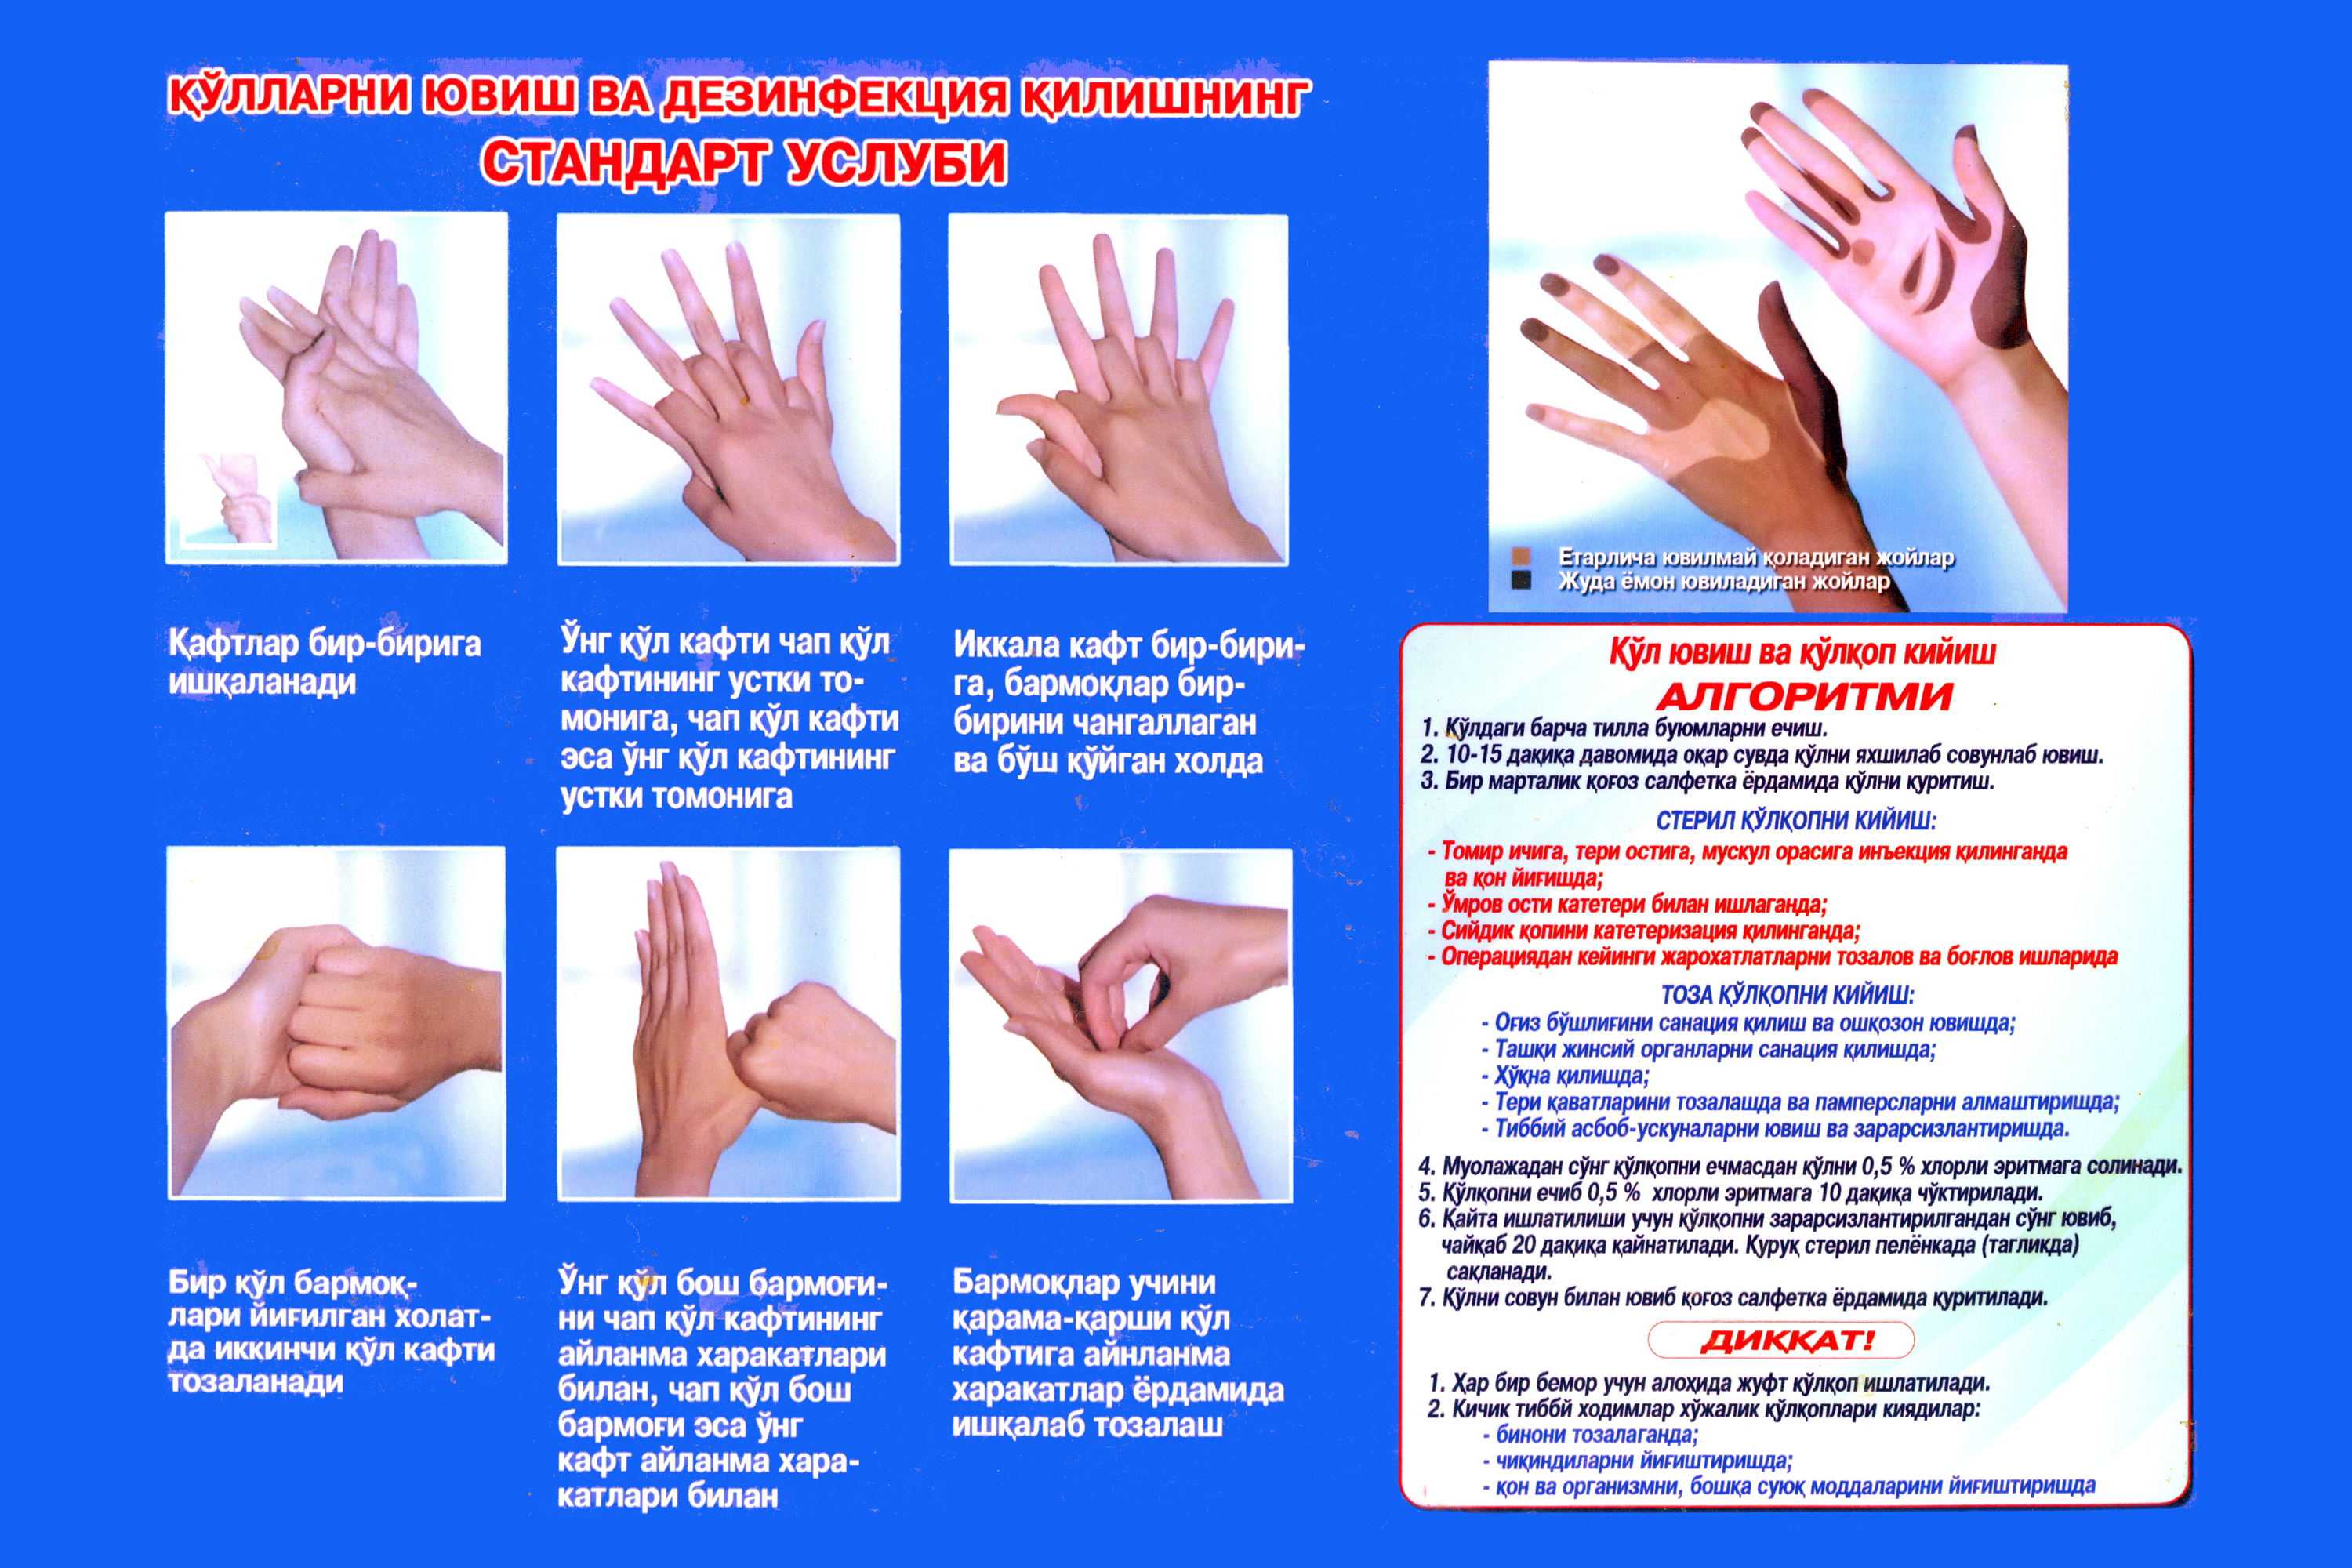 Гигиена рук медицинского персонала тесты с ответами. Гигиеническая обработка рук. Мытье рук медицинского персонала. Техника обработки рук. Гигиена антисептика рук.